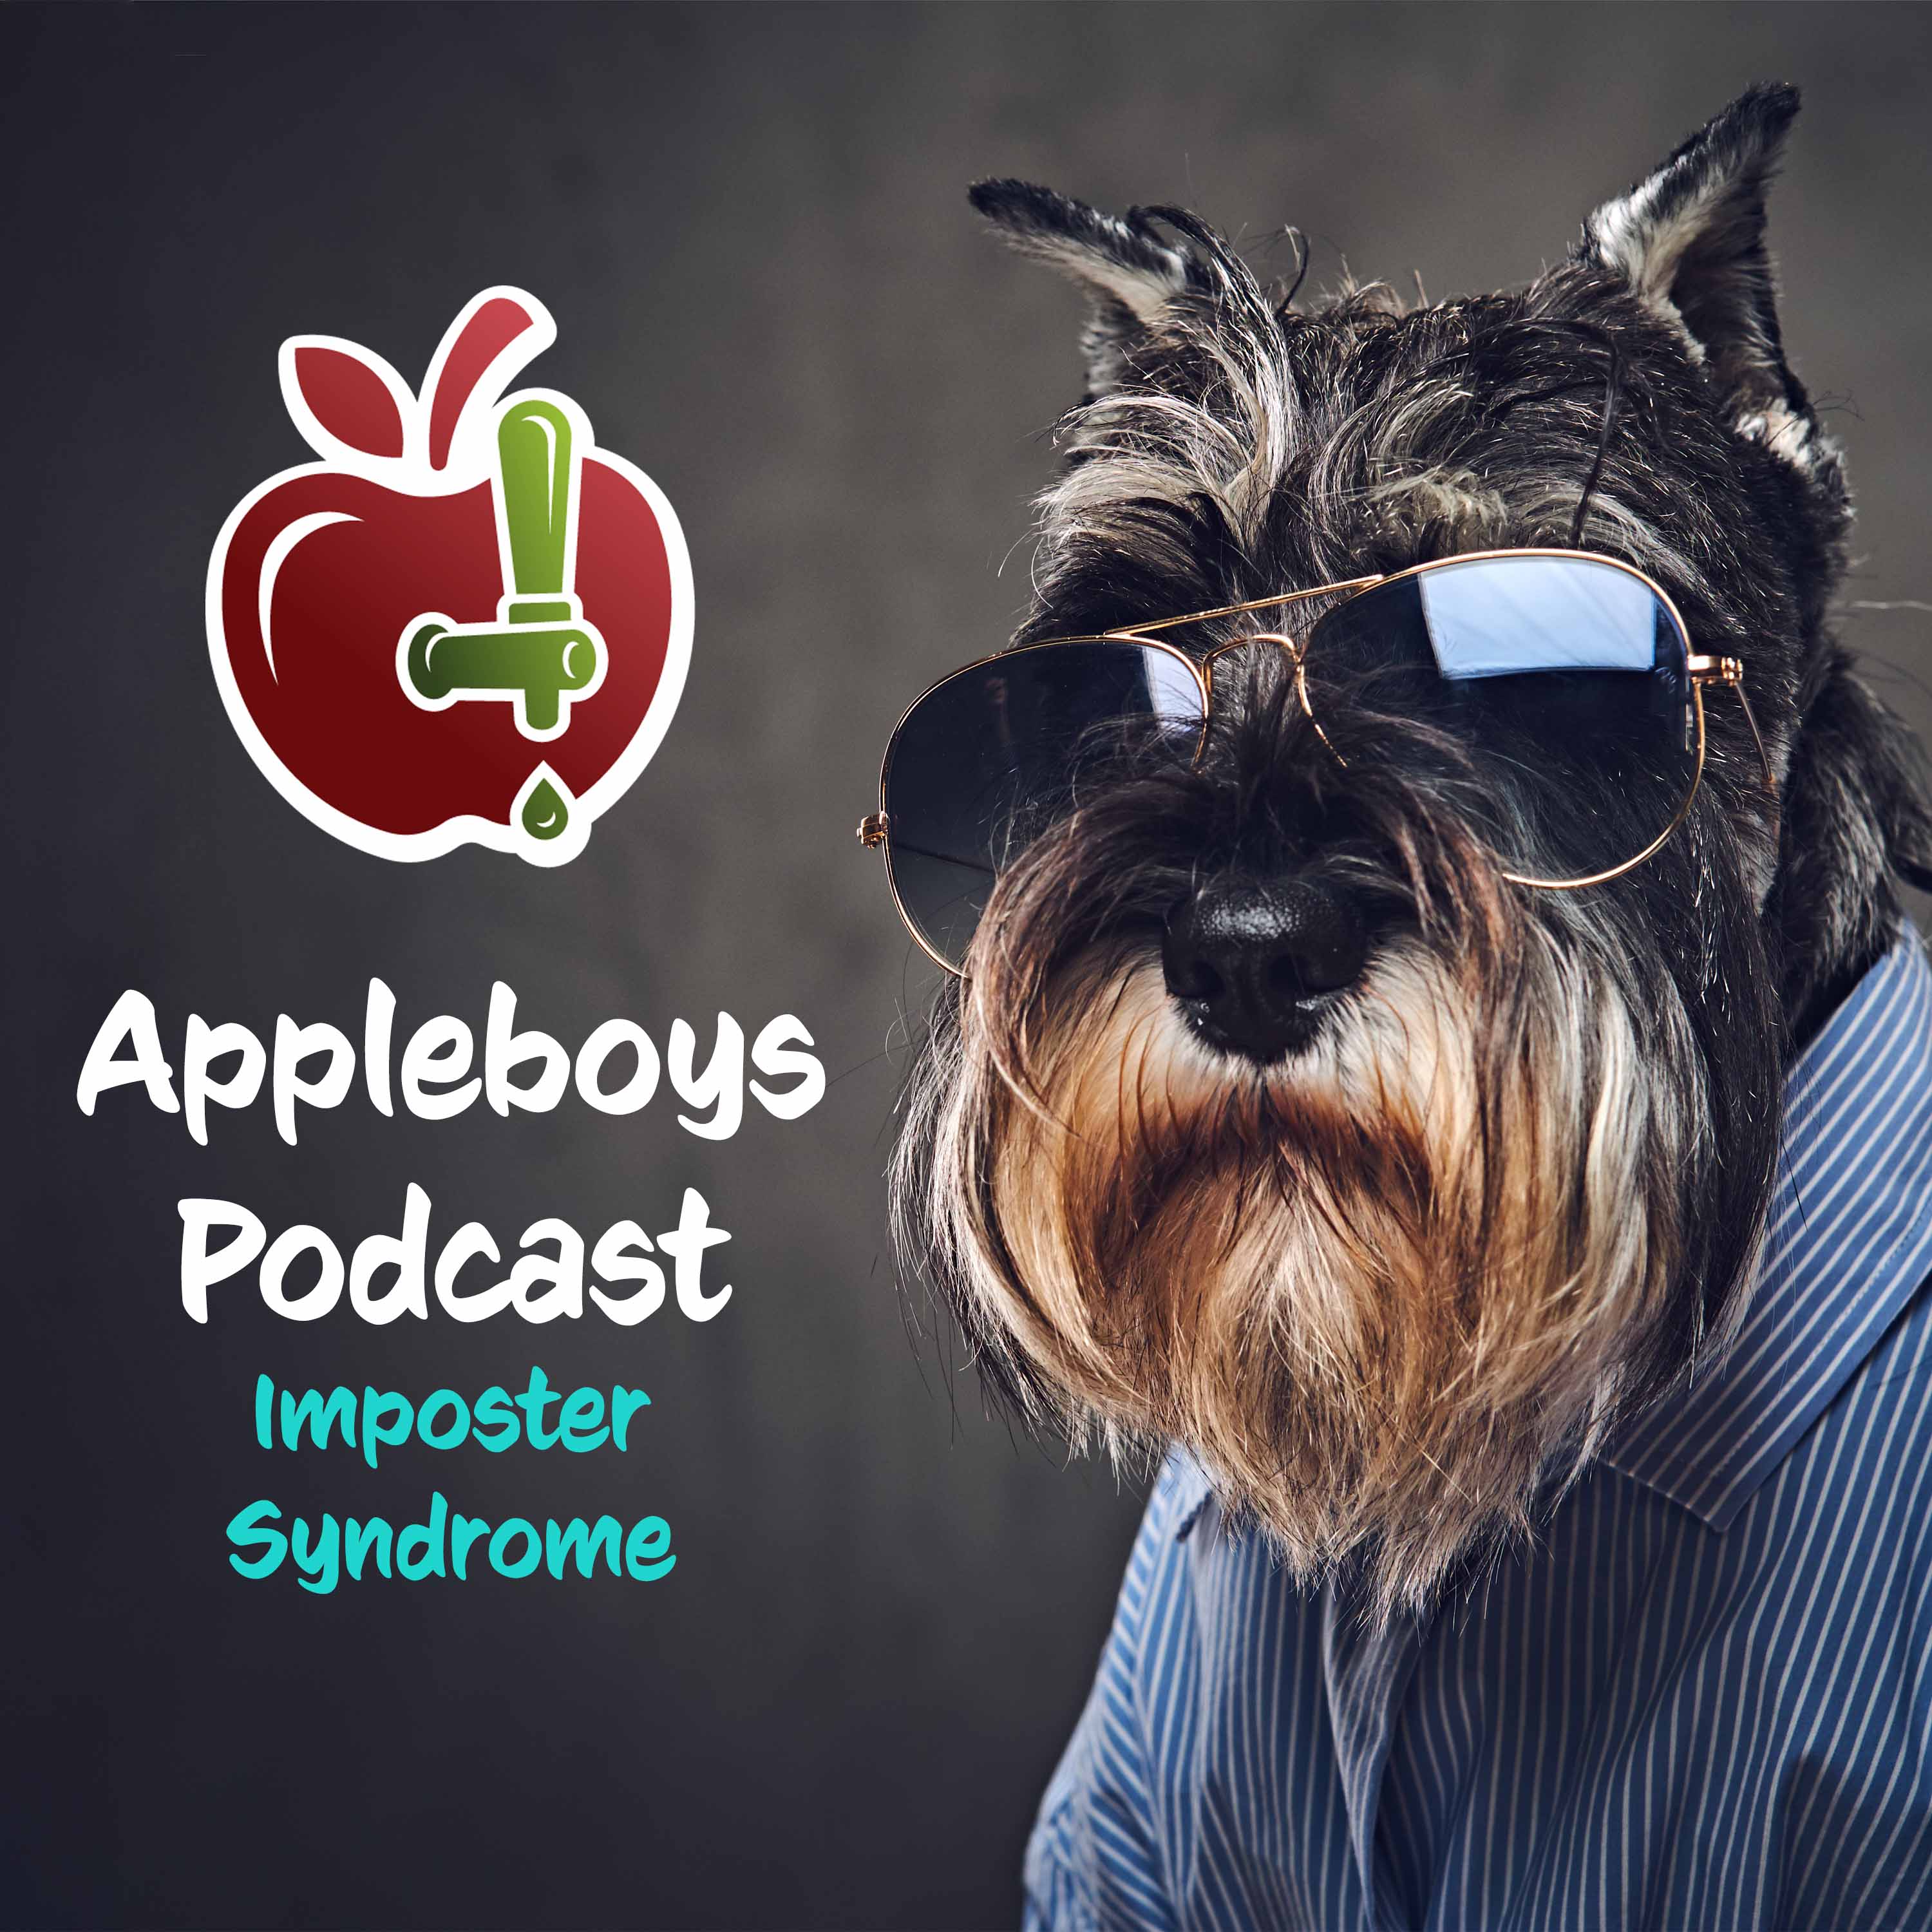 Artwork for podcast Appleboys Podcast